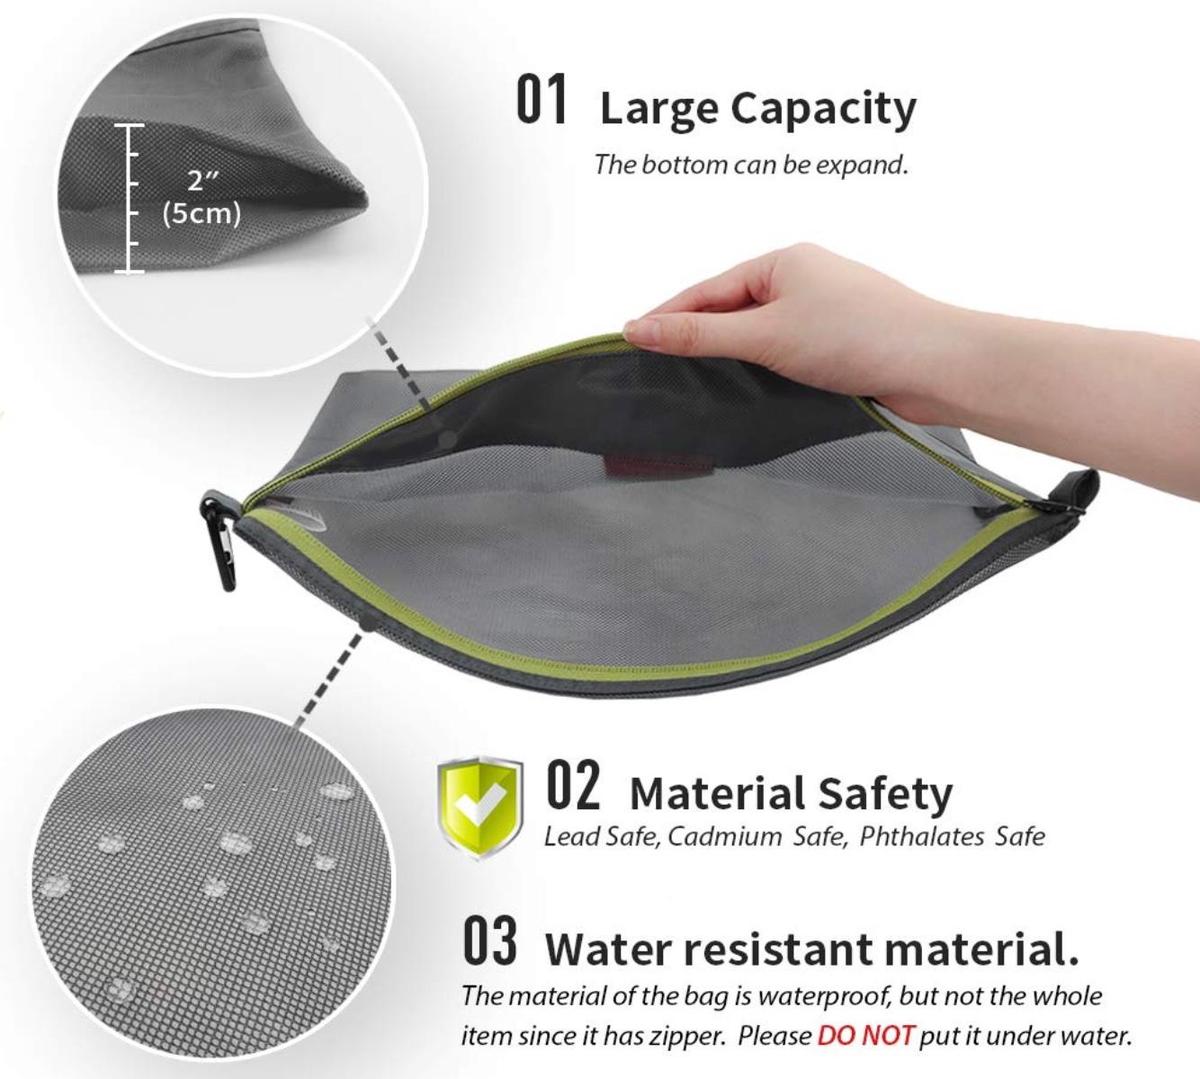 Waterproof bag